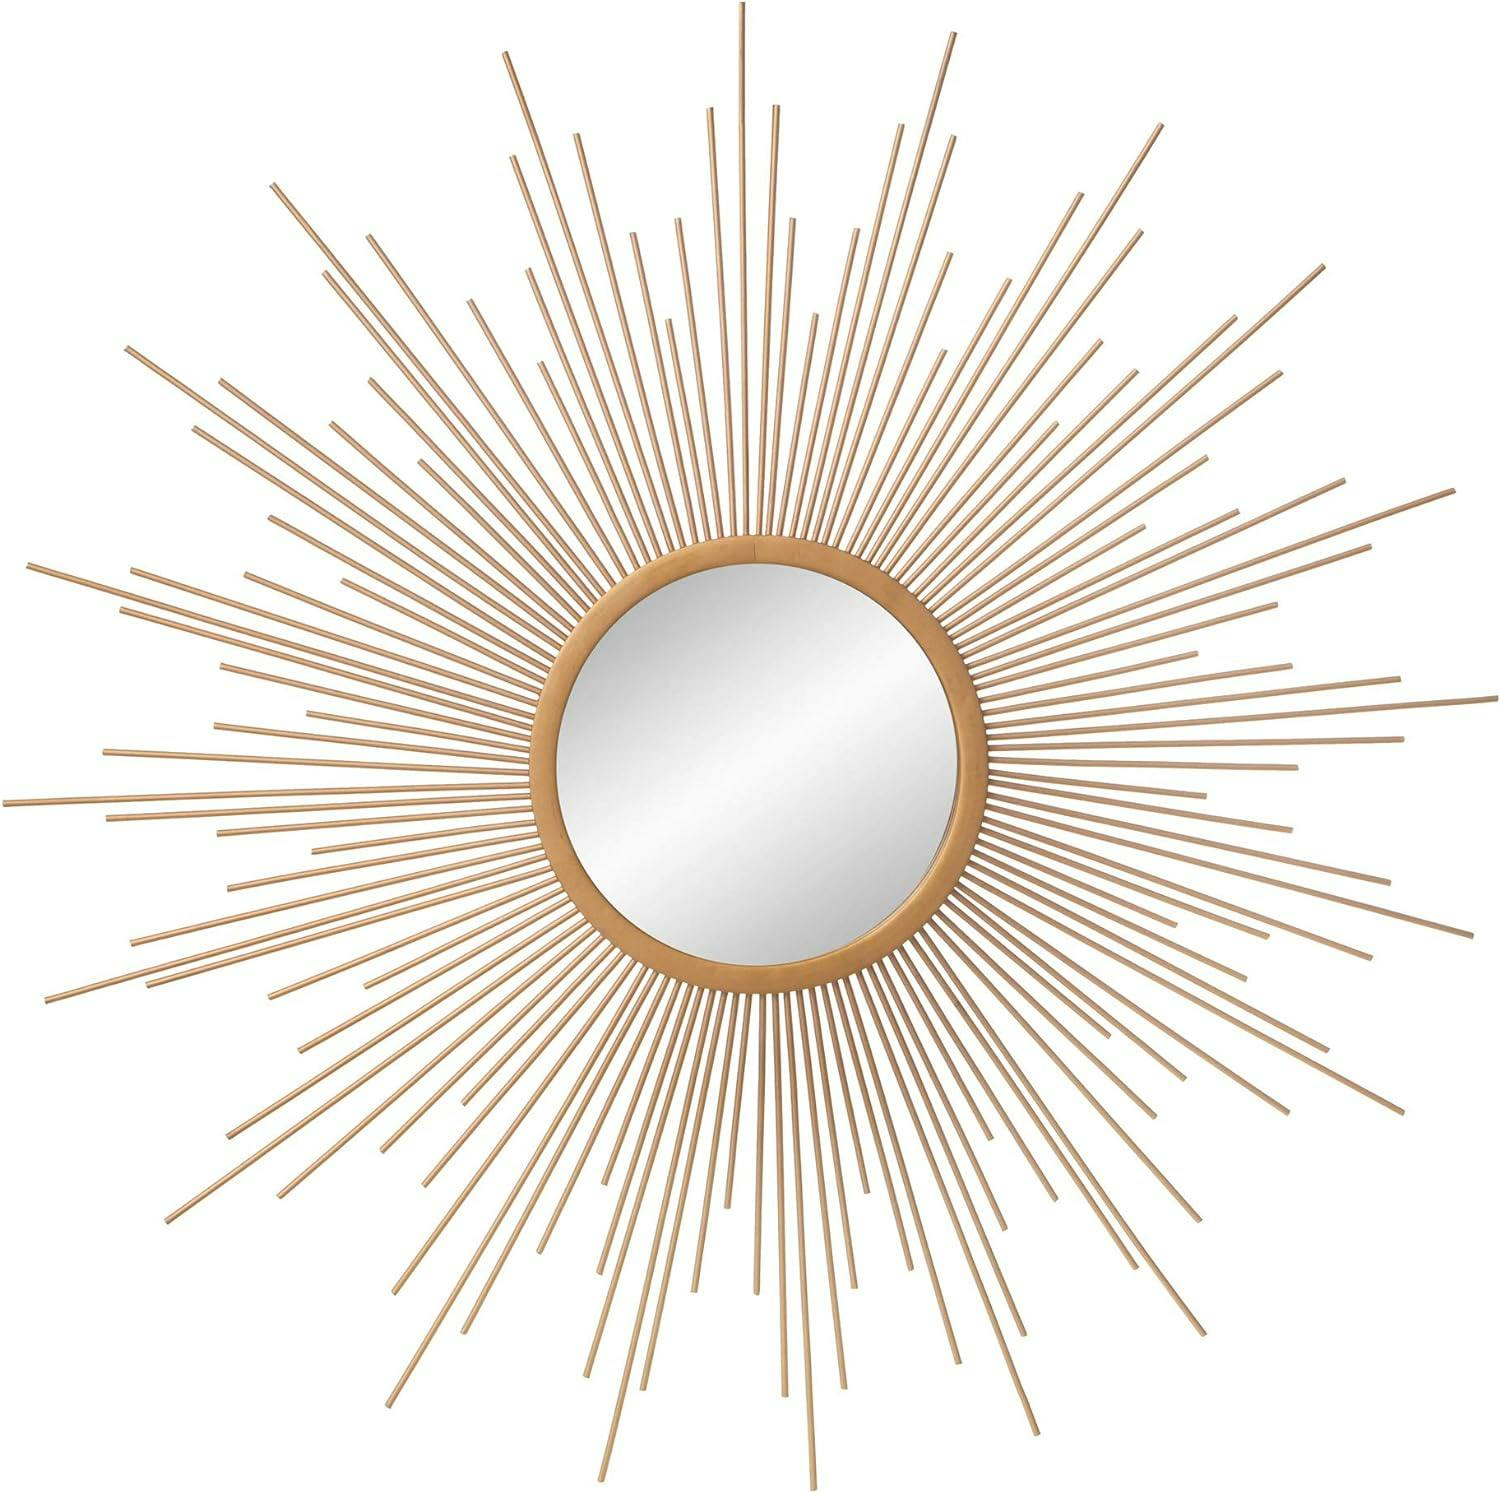 30" Round Gold & Wood Sunburst Wall Accent Mirror